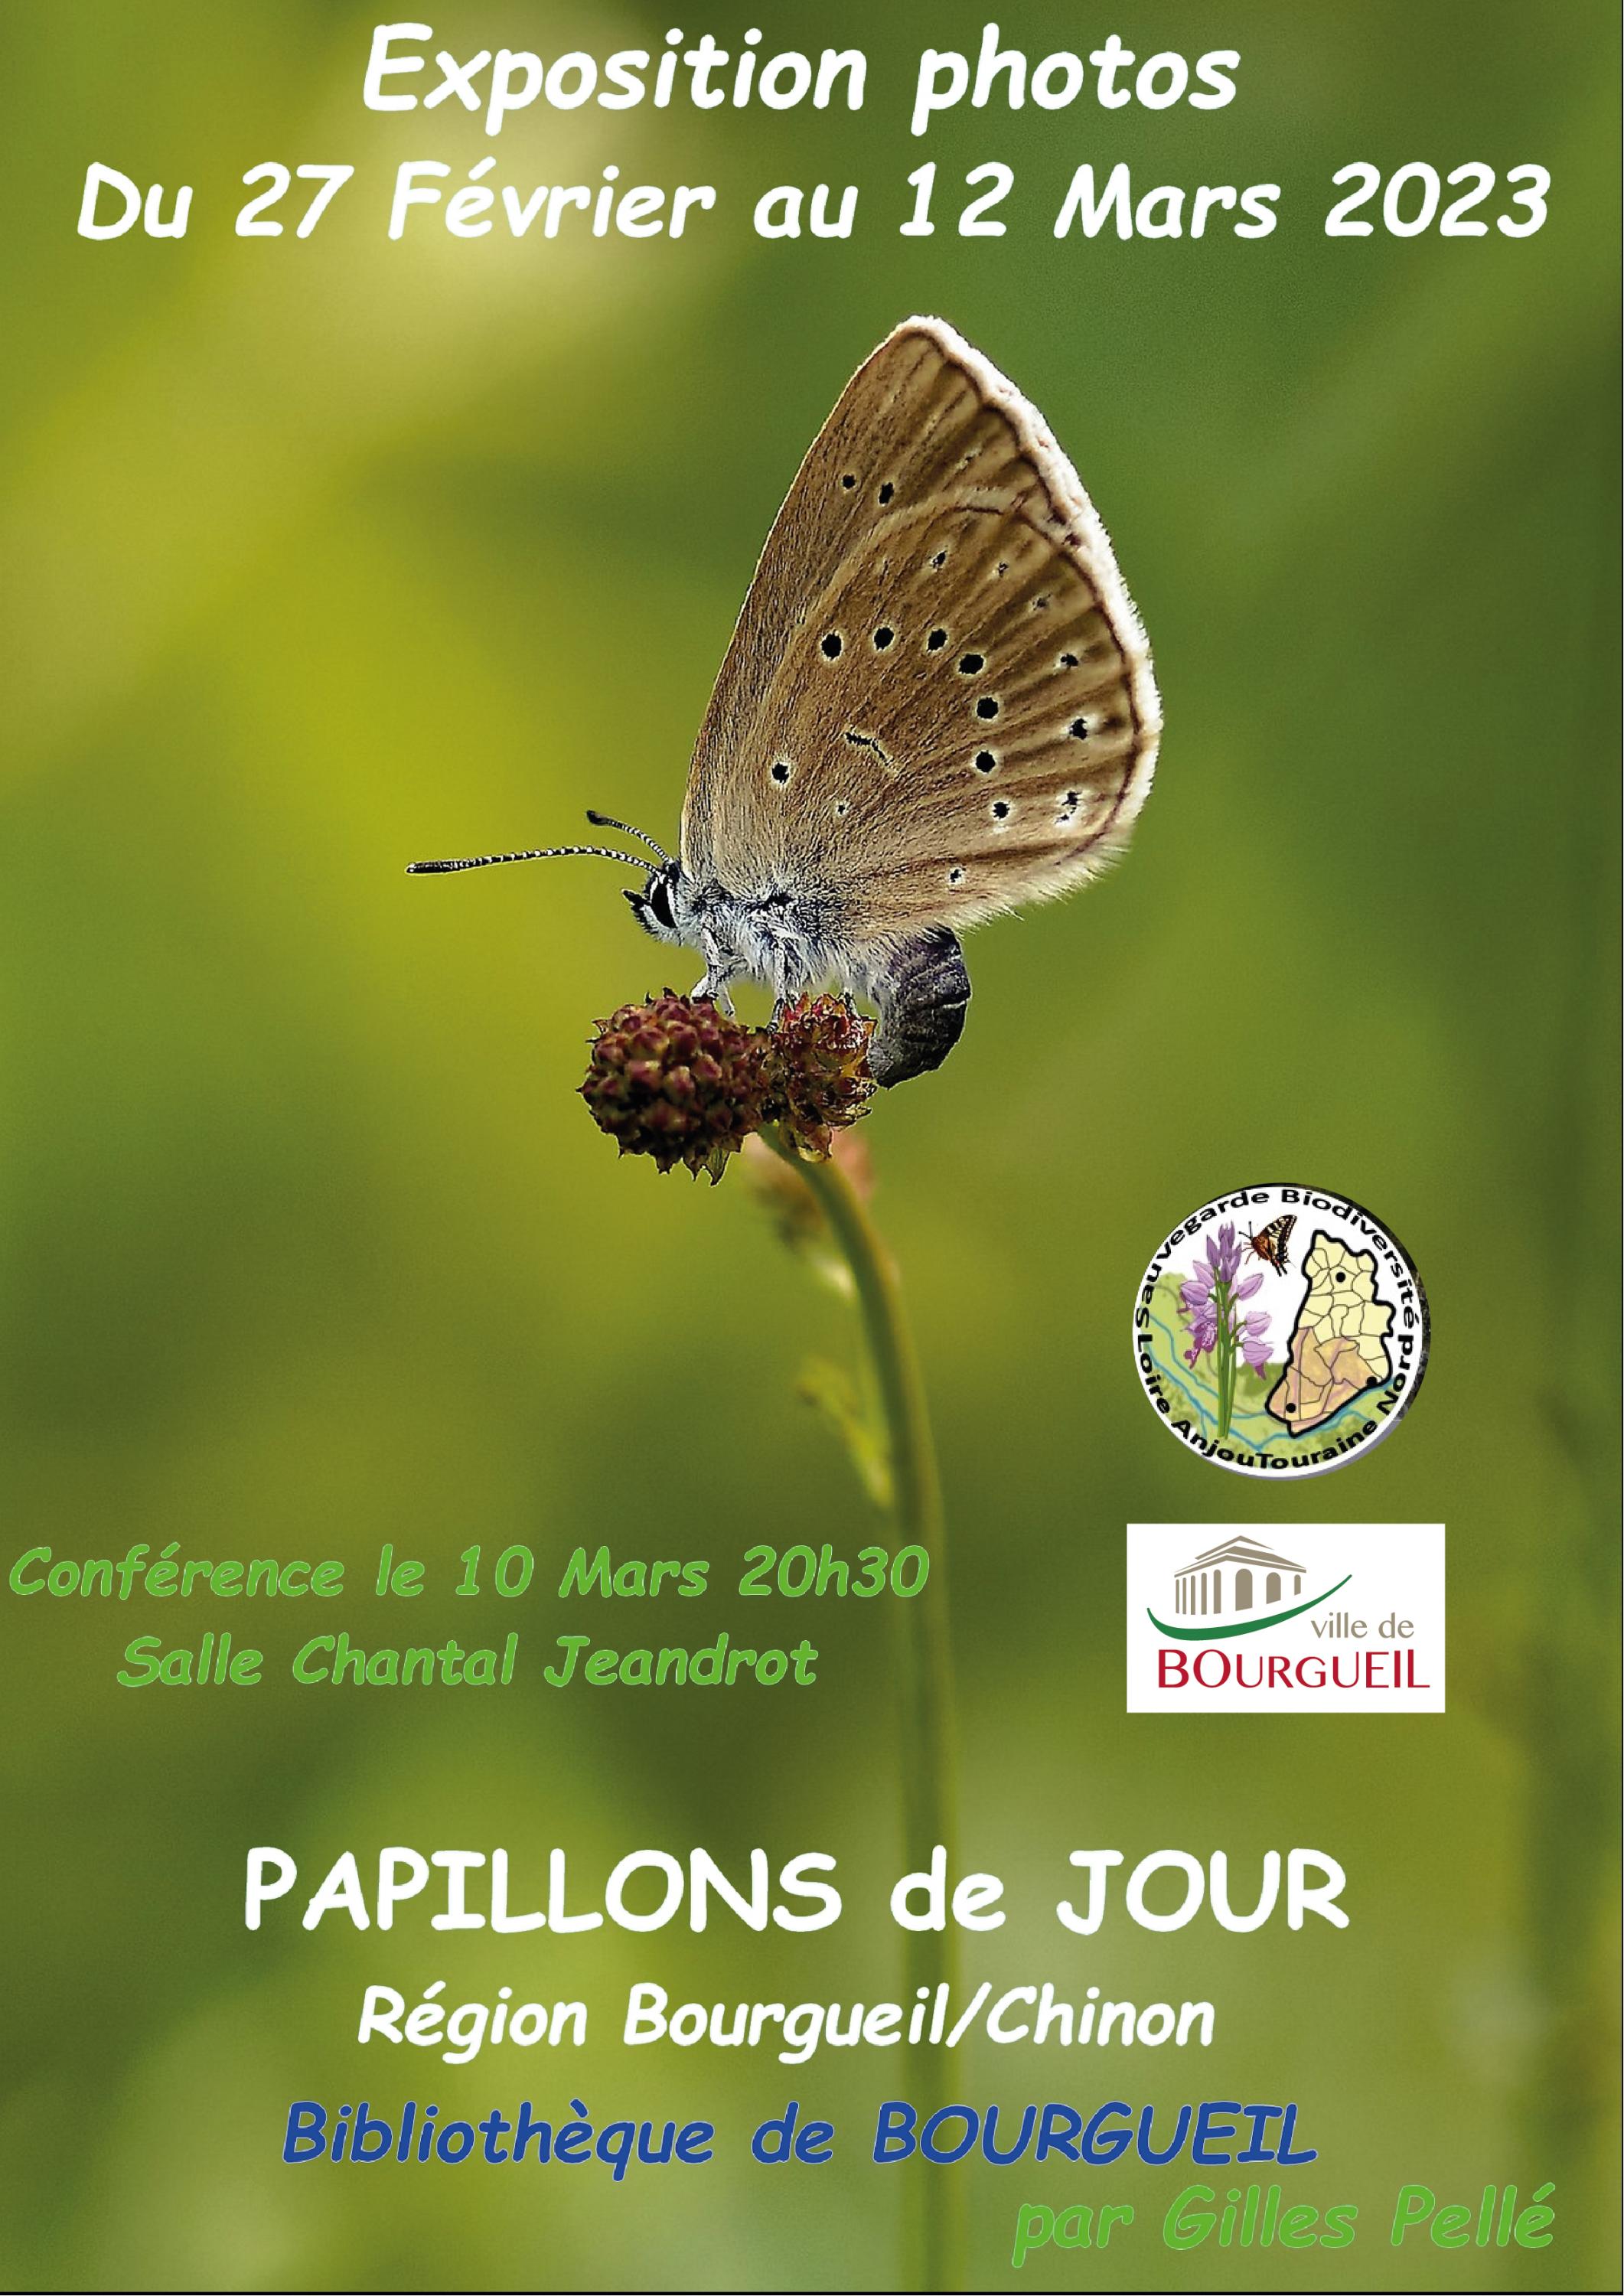 Exposition photos et conférence sur les papillons de jour du Bourgueillois et du Chinonais